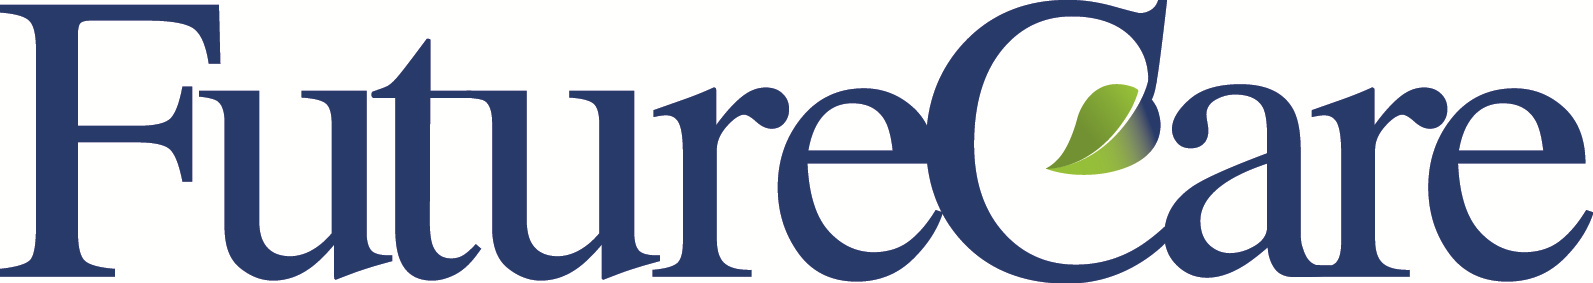 FutureCare logo